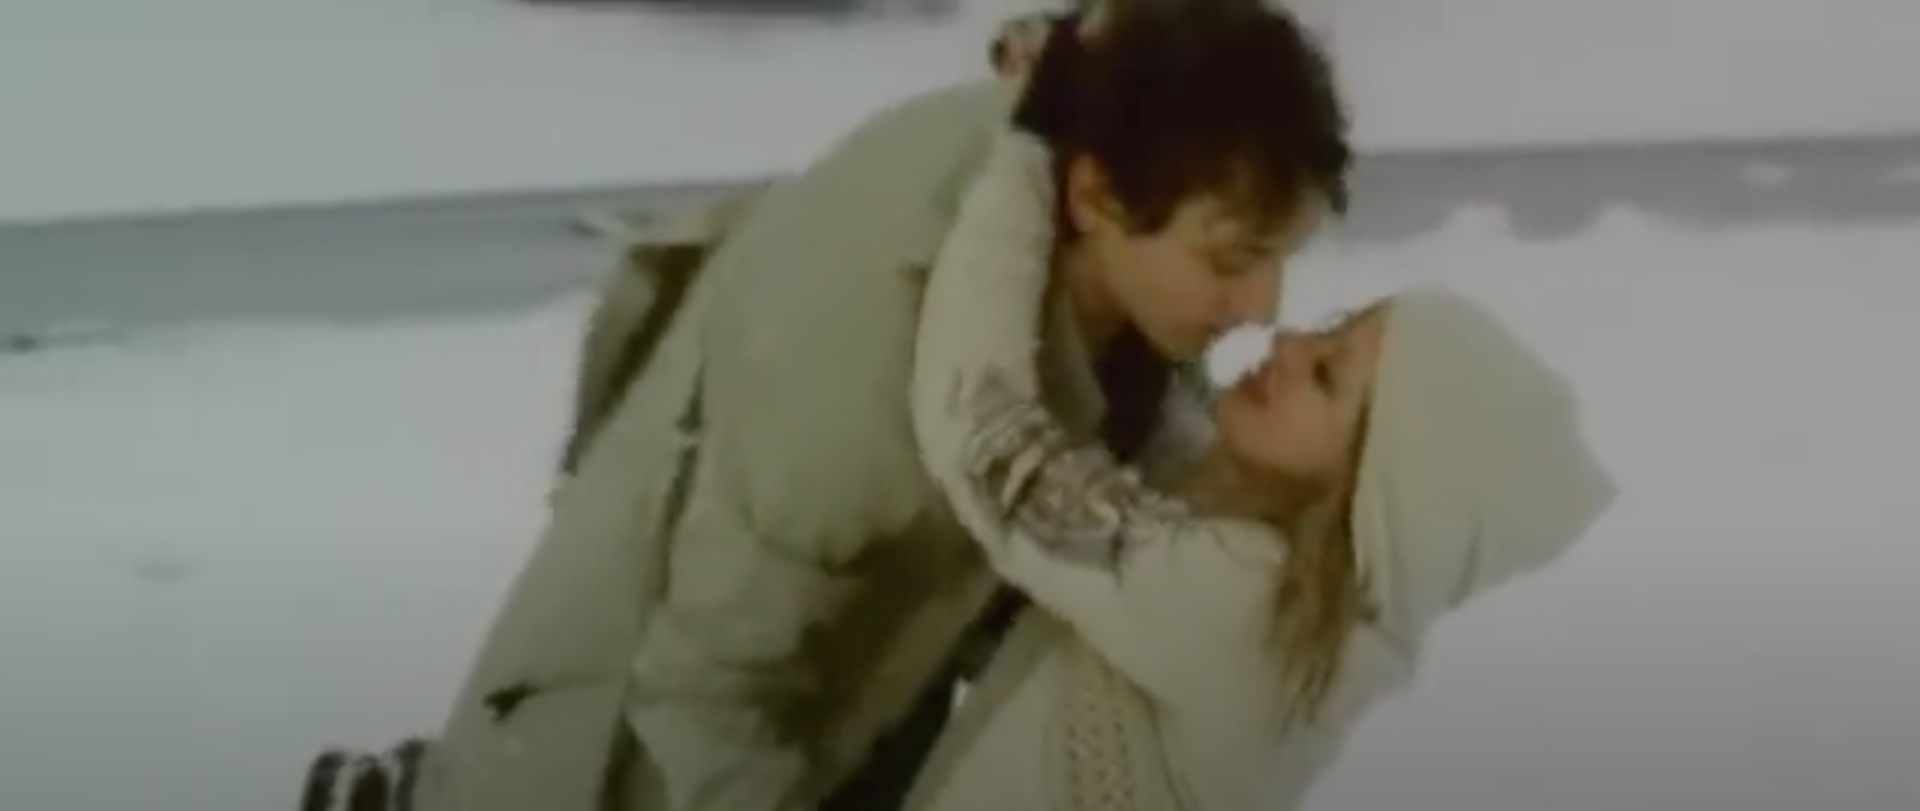  Raphaël et Mélanie Thierry dans le clip vidéo de Caravane